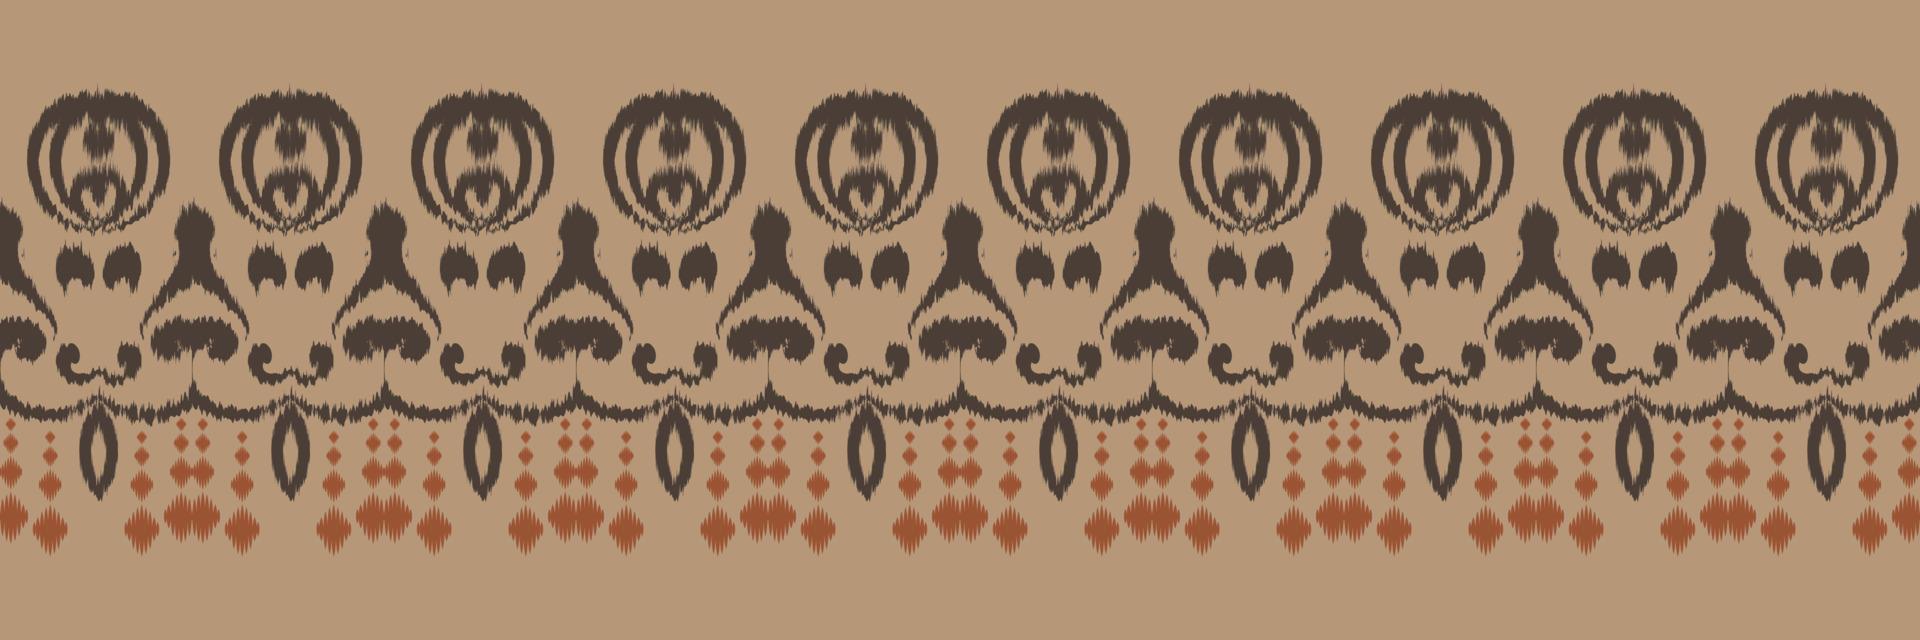 batik textil- ikat aztec sömlös mönster digital vektor design för skriva ut saree kurti borneo tyg gräns borsta symboler färgrutor bomull